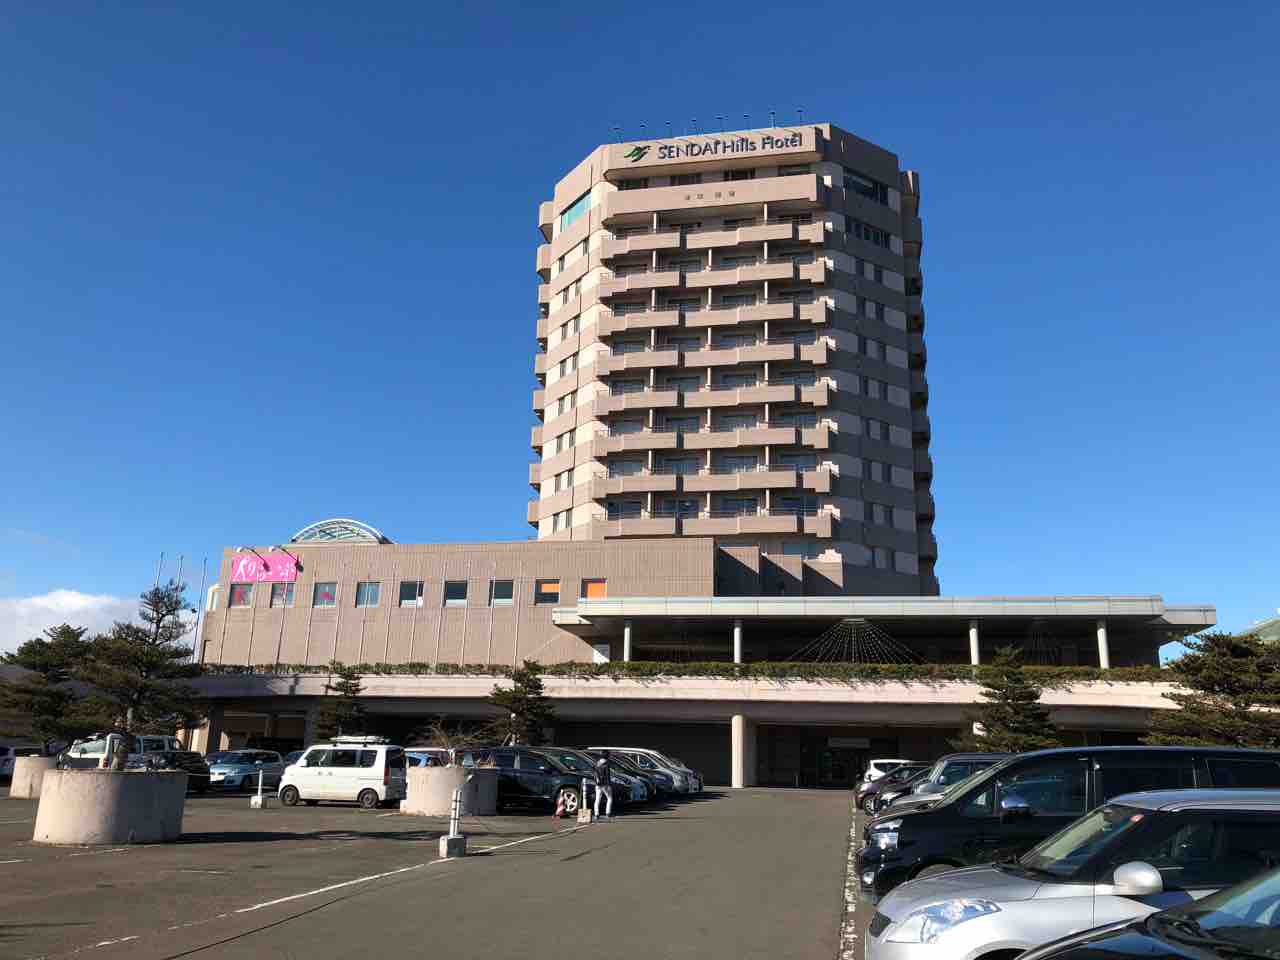 中山南にある 仙台ジョイテルホテル が 仙台ヒルズホテル としてリニューアルオープンしていたみたい 泉区プラス